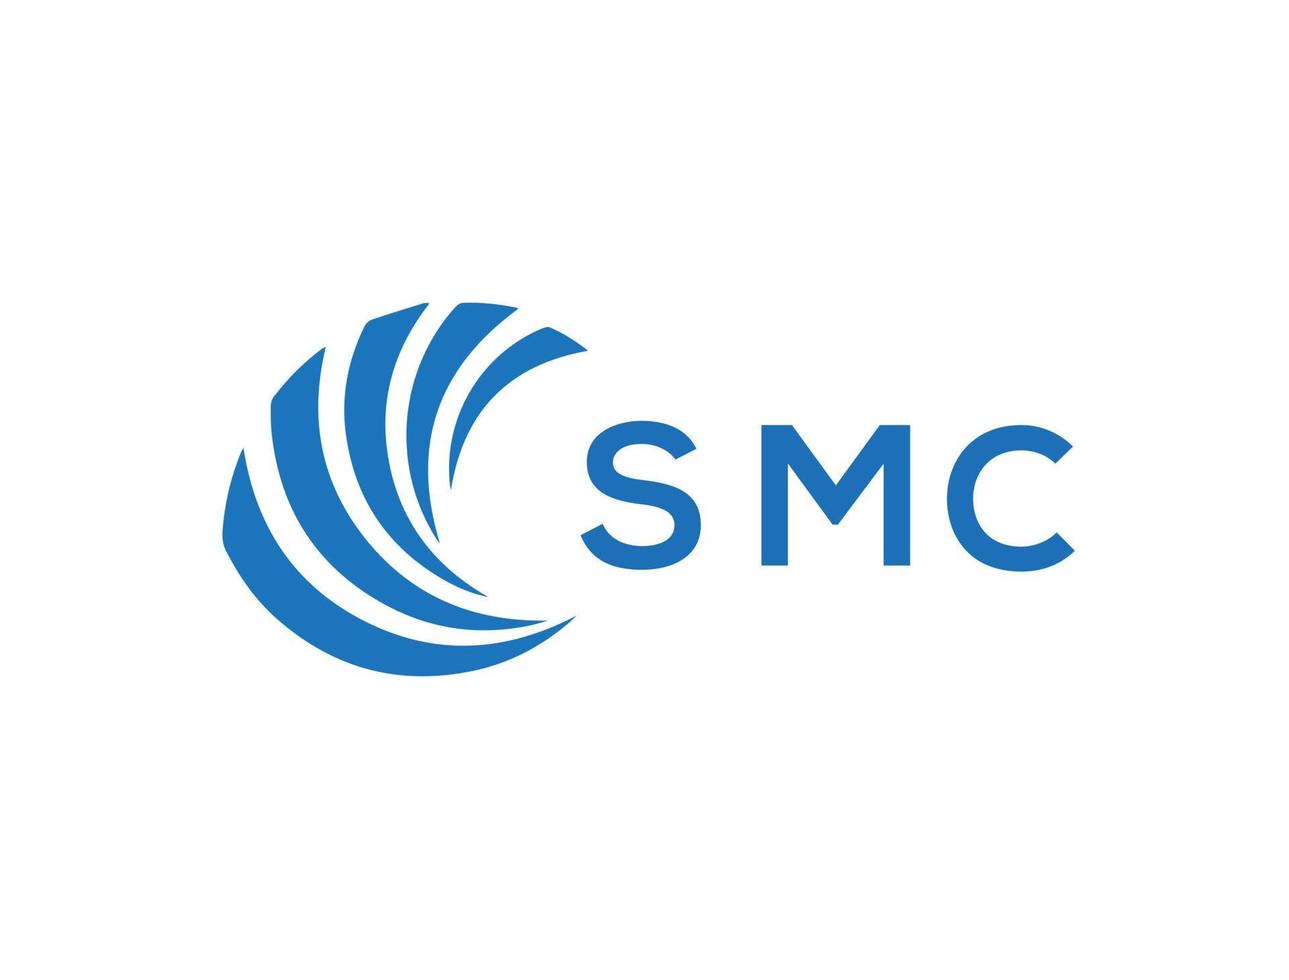 SMC letter logo design on white background. SMC creative circle letter logo concept. SMC letter design. vector